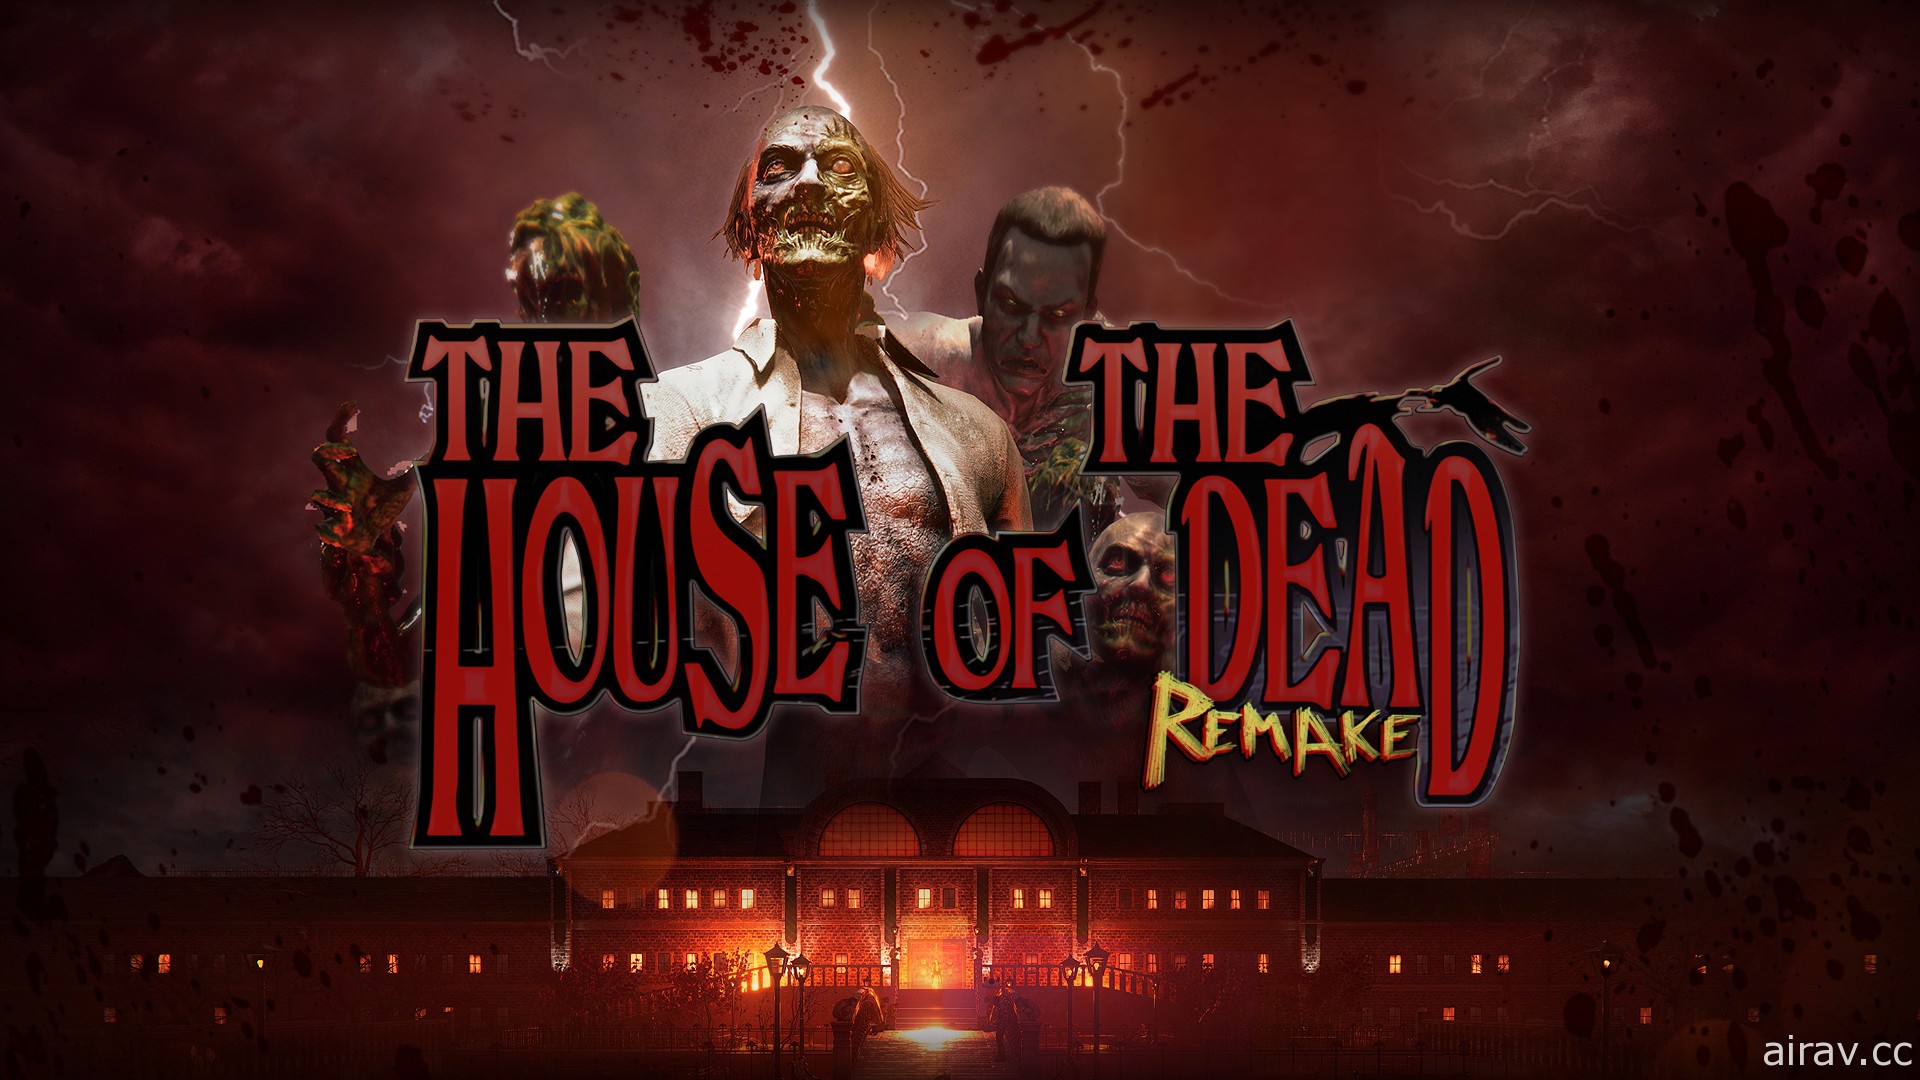 经典光线枪游戏重制《死亡鬼屋 重制版》2021 年登场 以全新画面与操控体验原味玩法